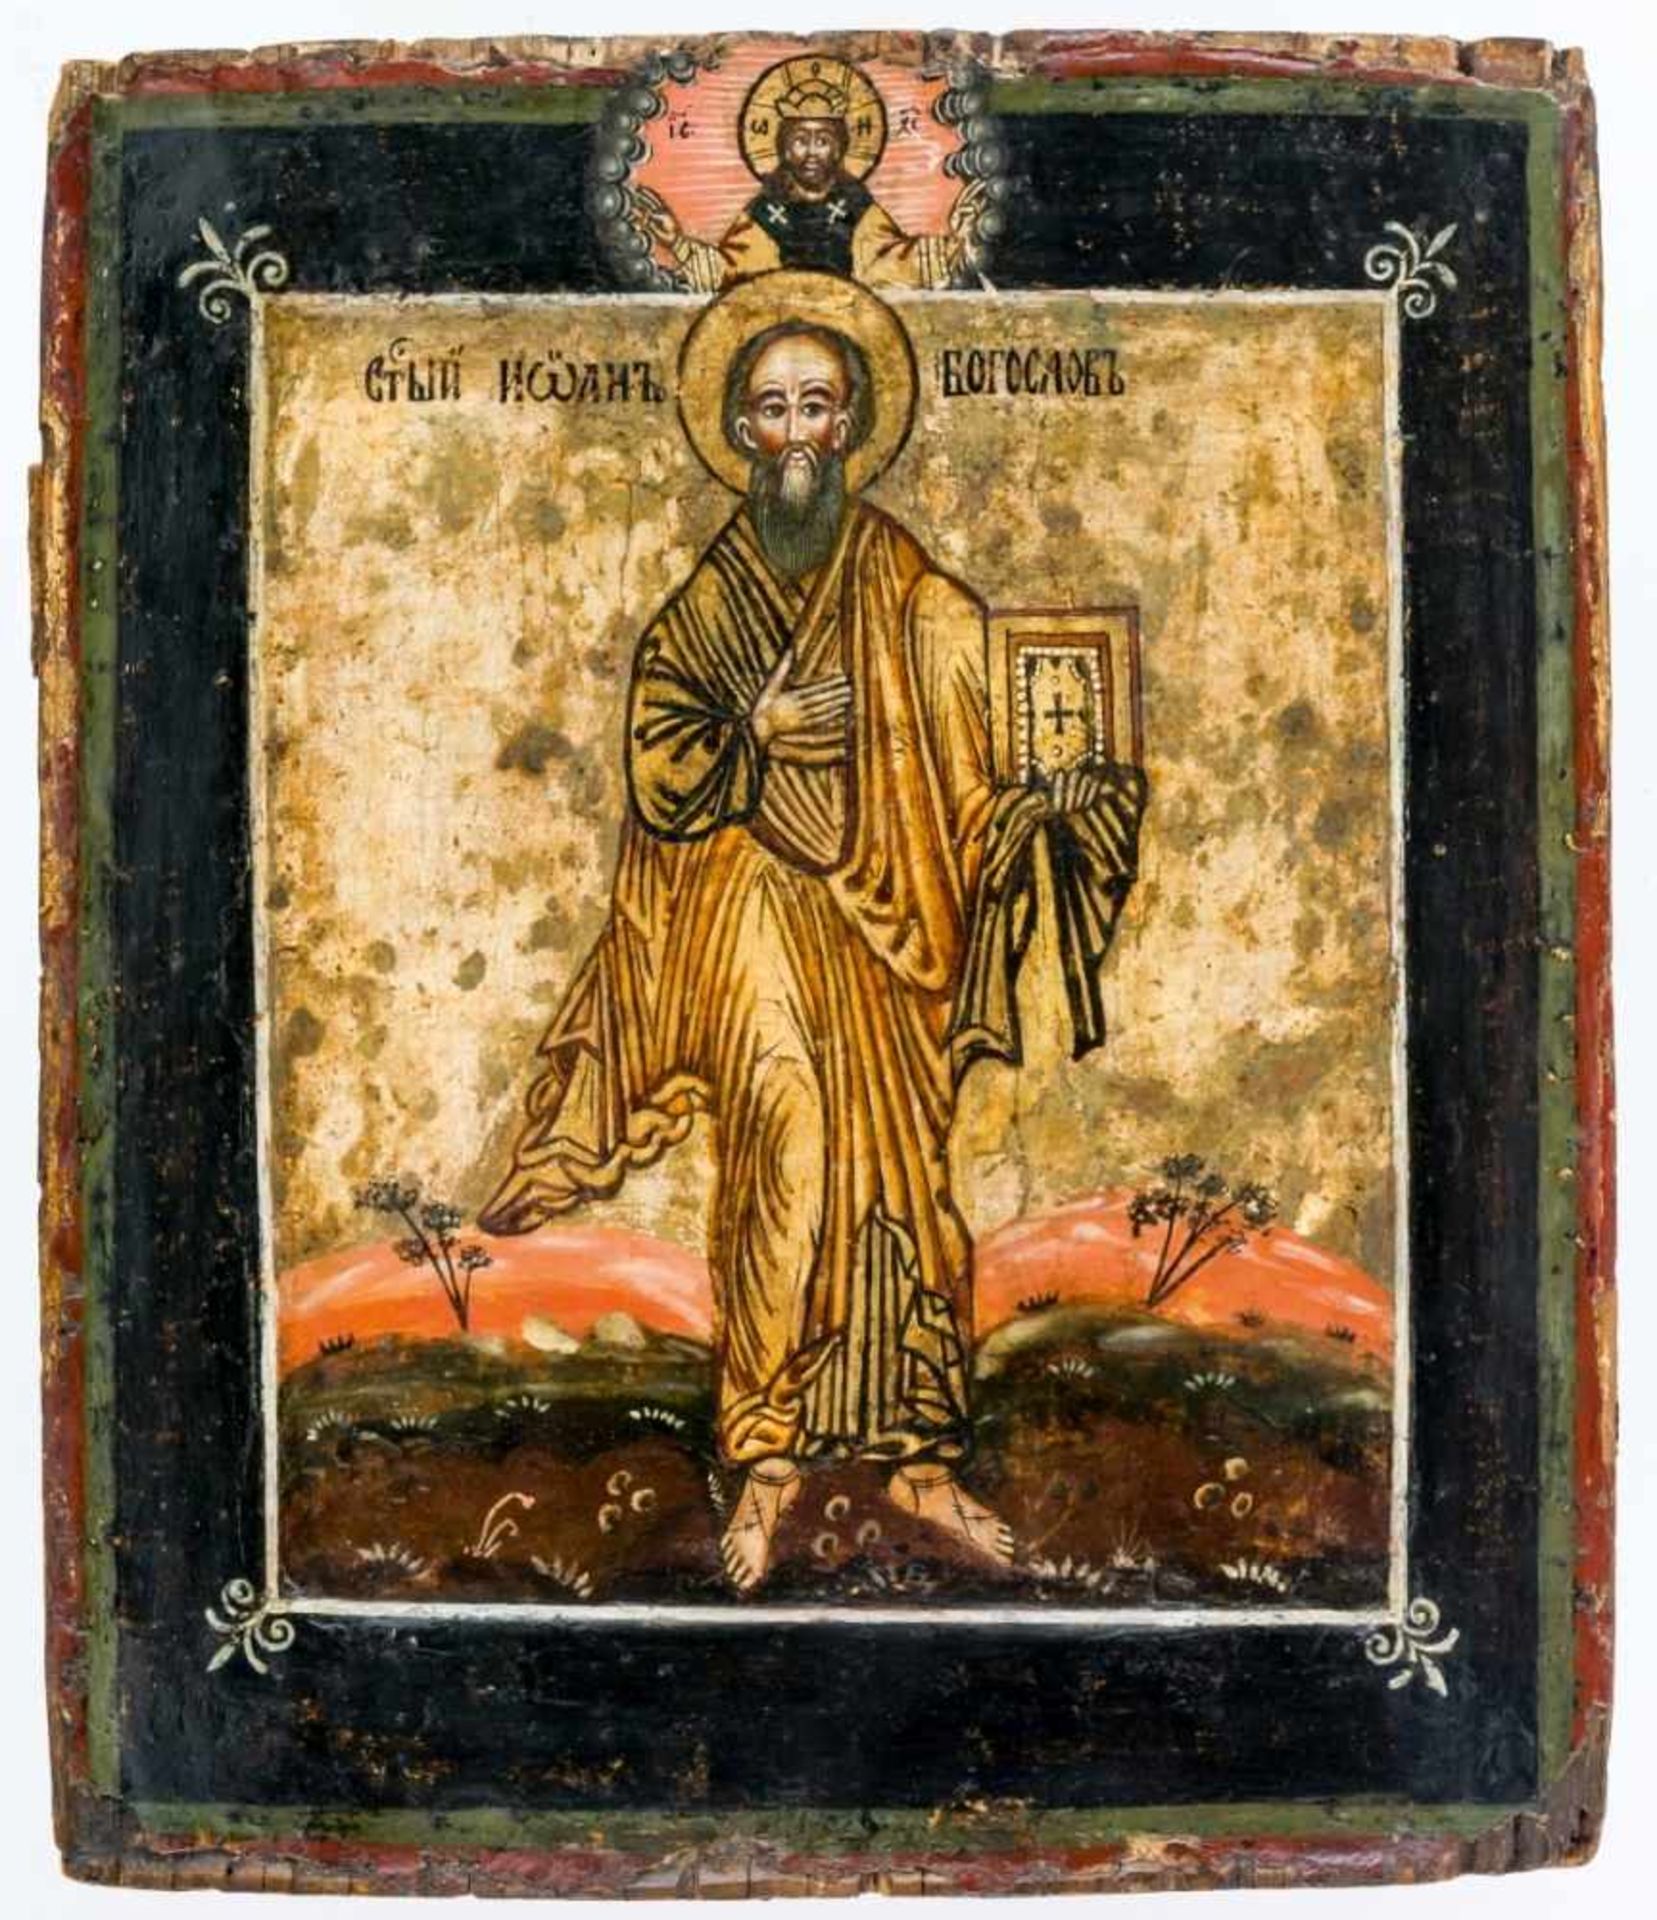 Hl. Johannes der Evangelist Russische Ikone, um 1750 31,8 x 27 cmSt. John the Evangelist, Russian